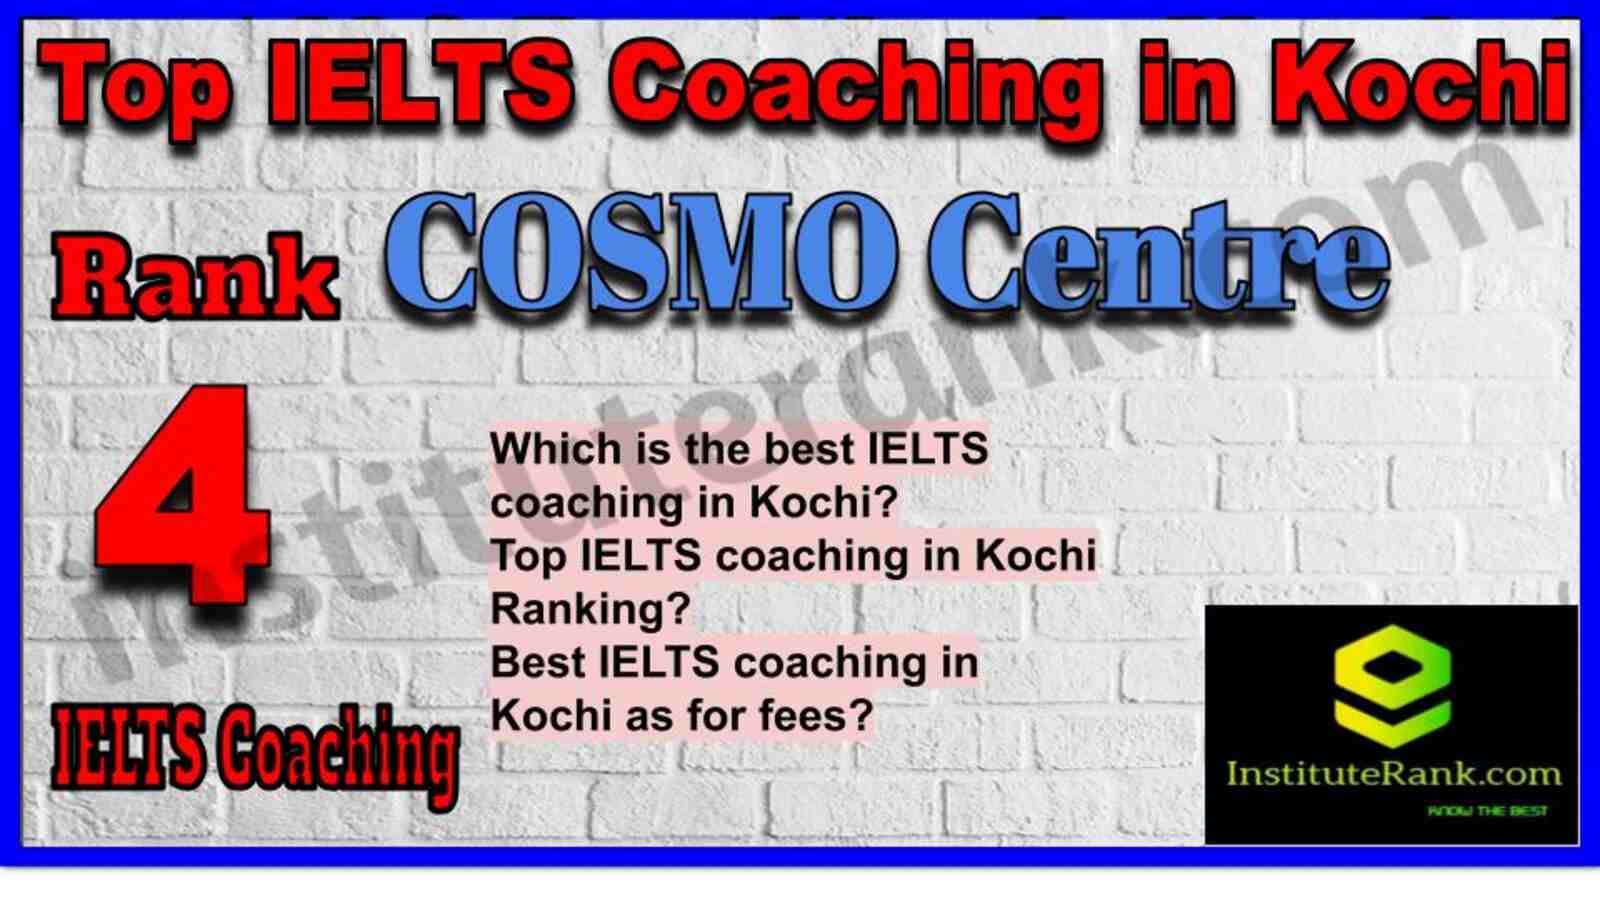 Rank 4. COSMO Centre | Best IELTS Coaching in Kochi